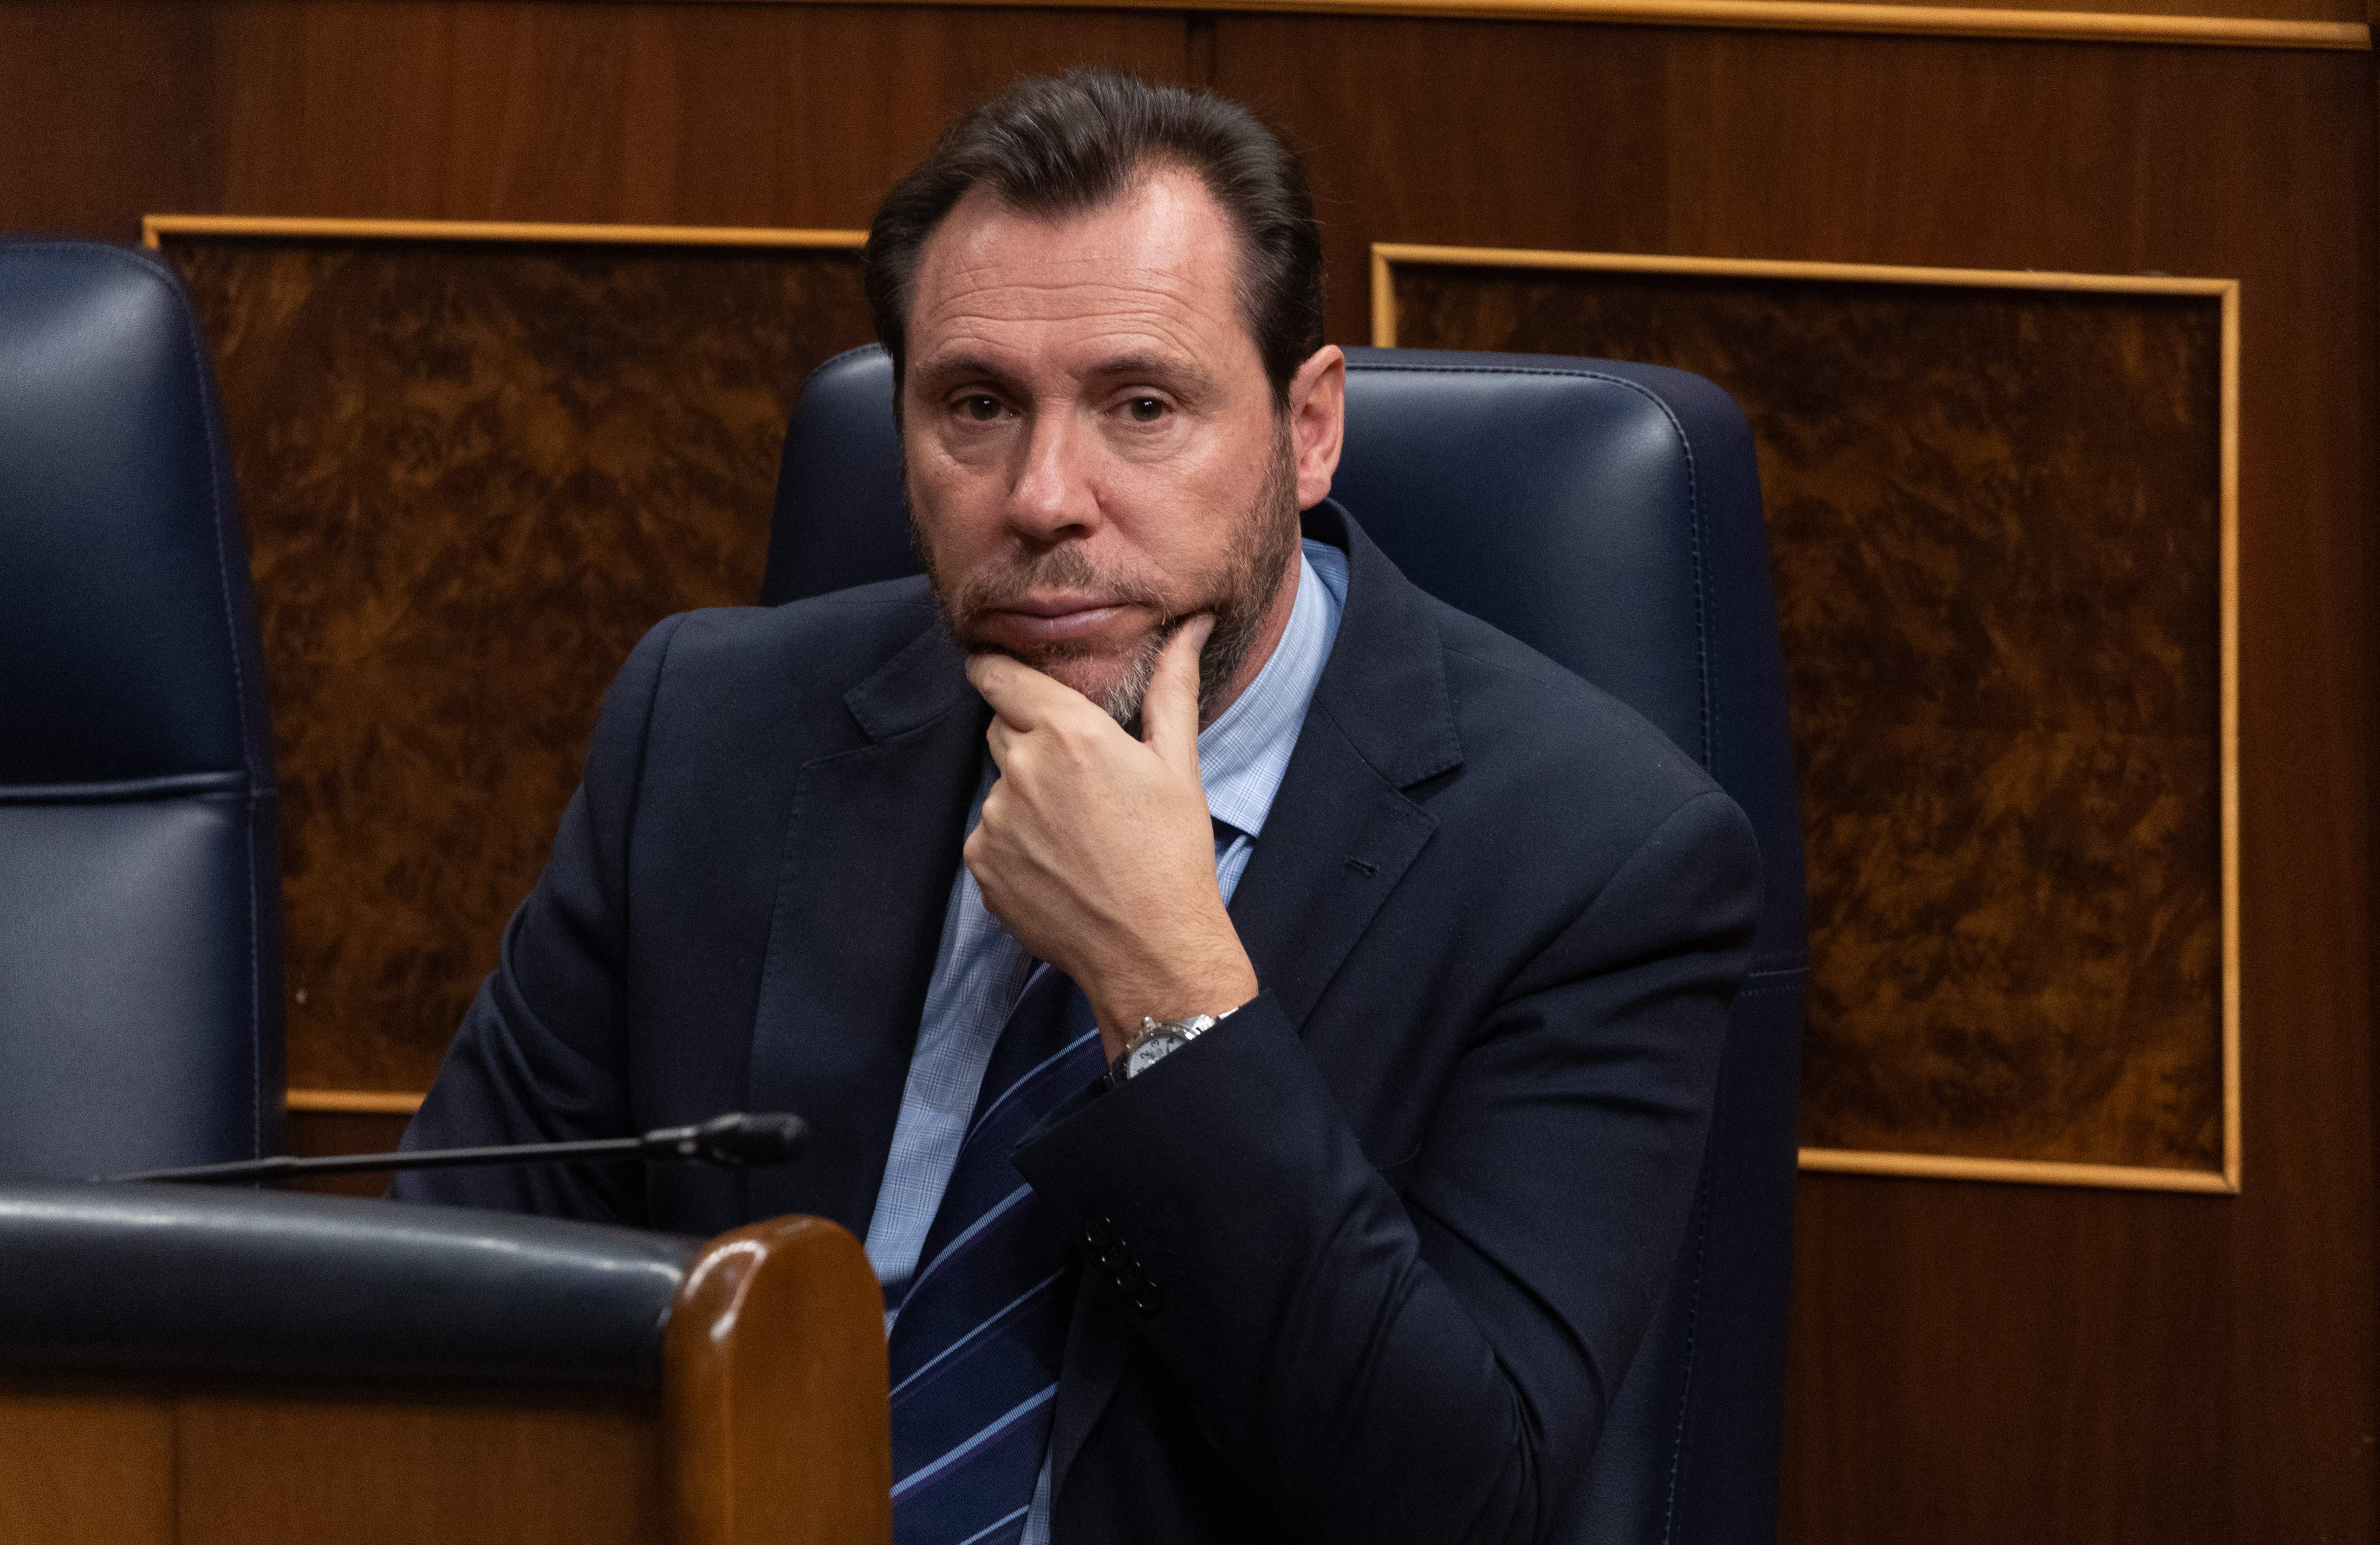 El ministre d’Interior argentí demana la destitució d’Óscar Puente: “És un irresponsable”